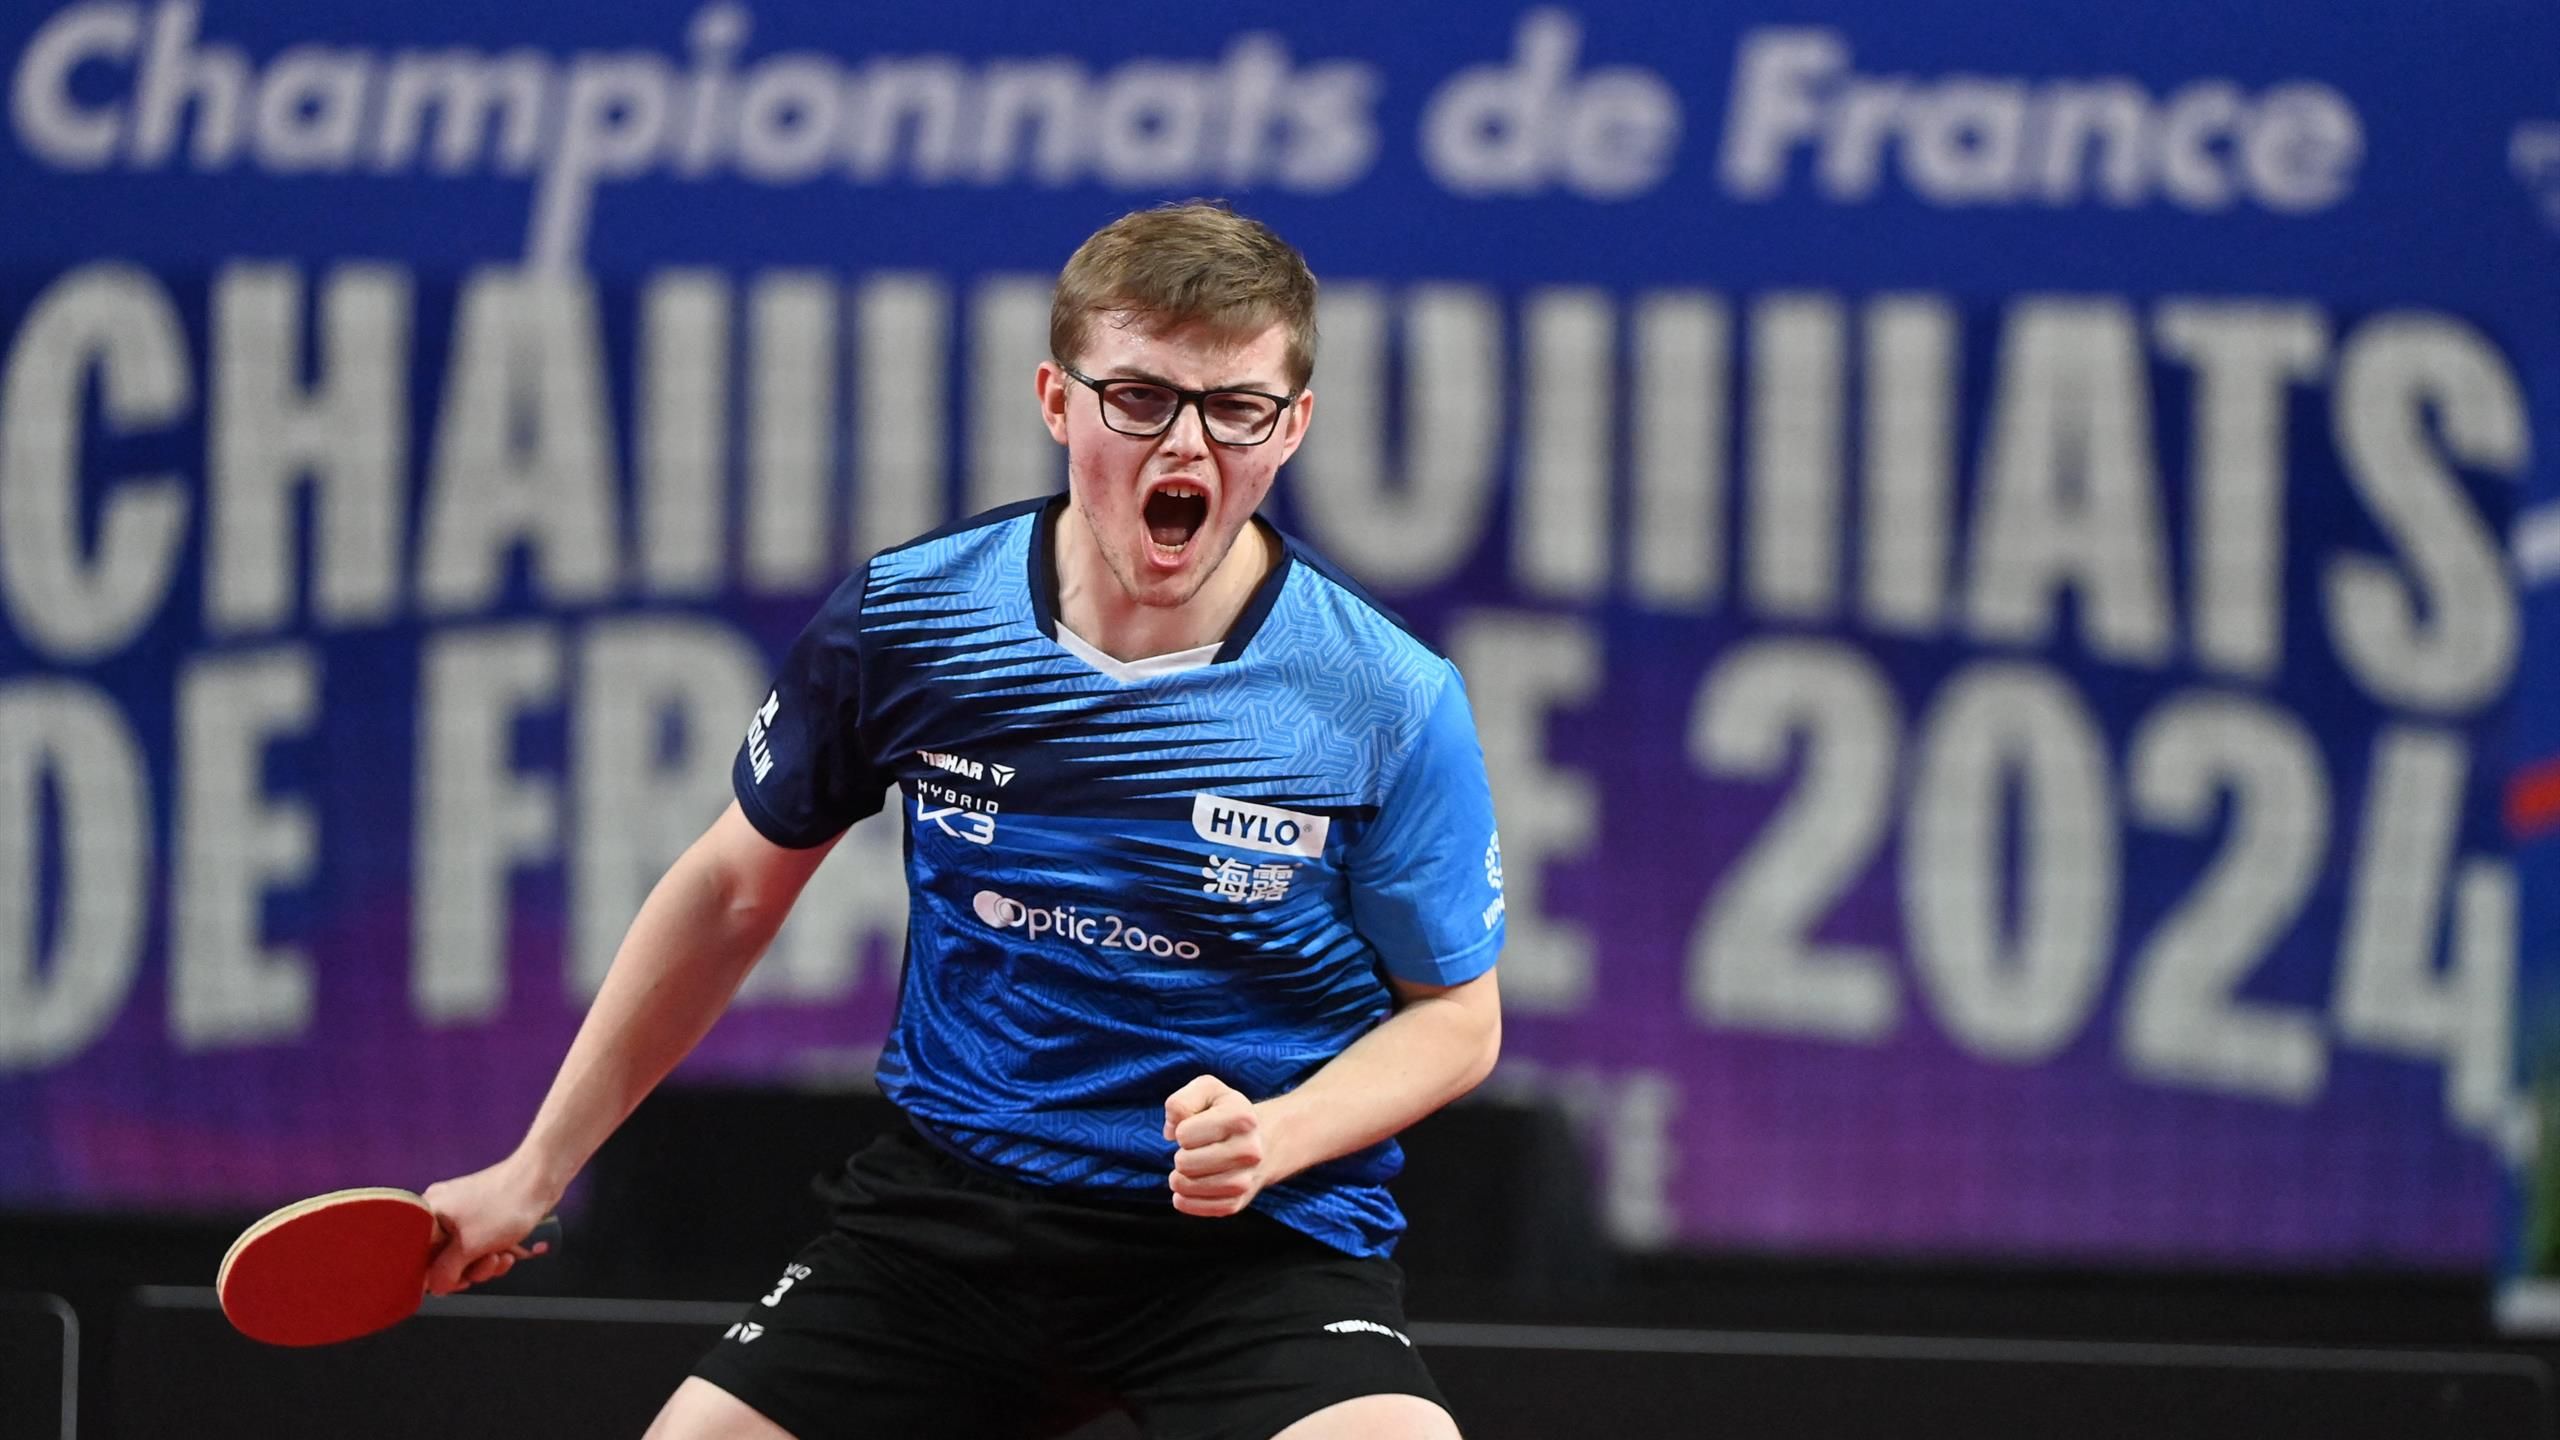 Mistrzostwa Francji – Alexis Lebrun wygrywa pojedynek ze swoim młodszym bratem Feliksem i zachowuje tytuł mistrza